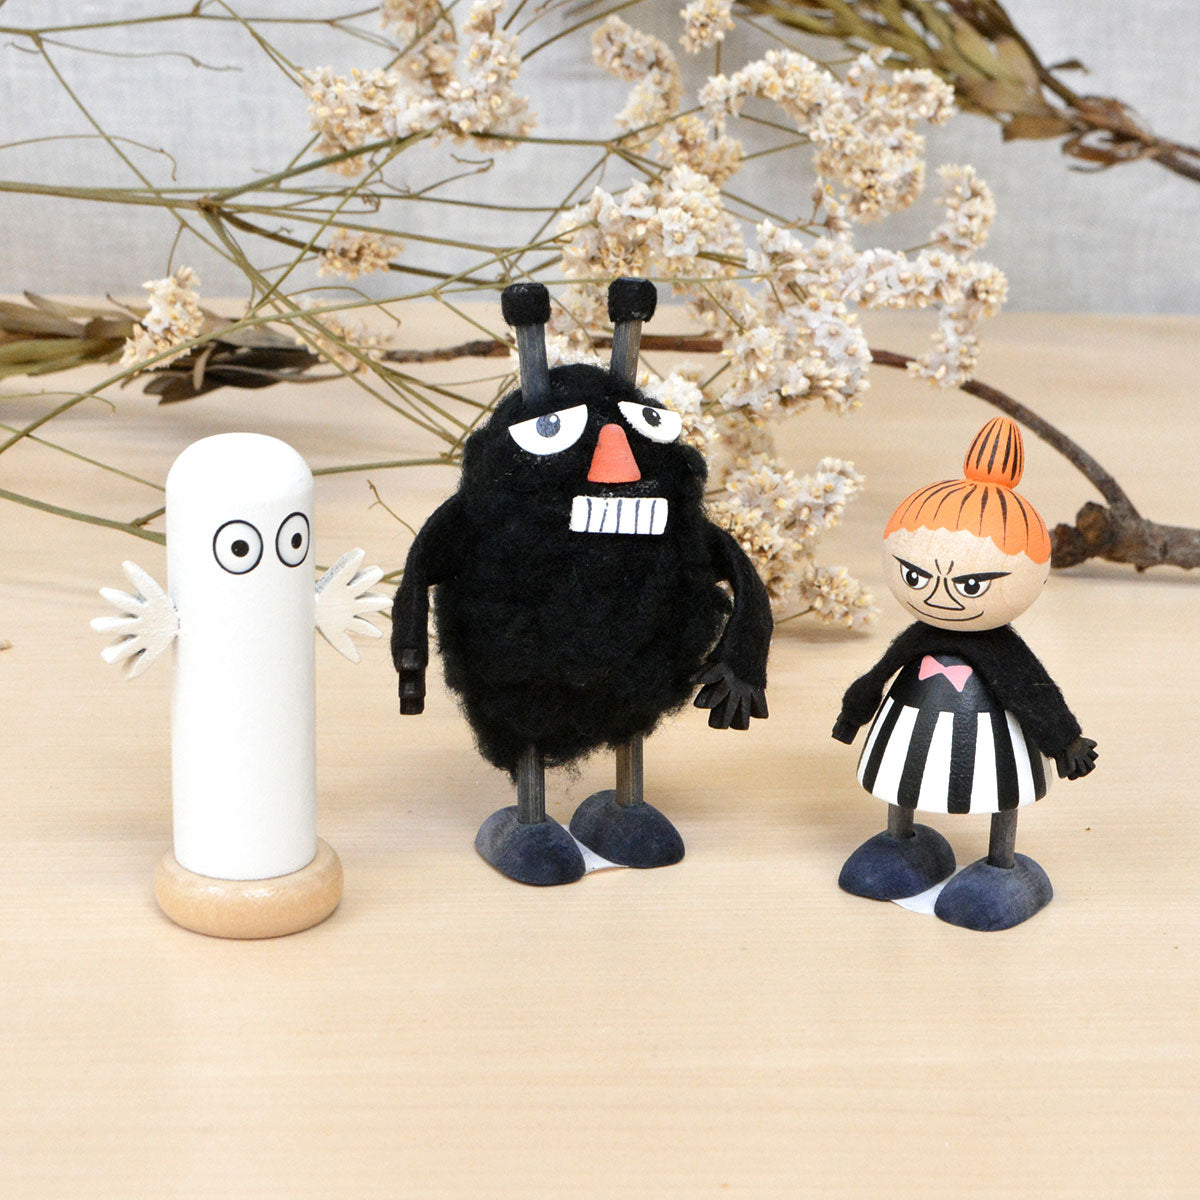 Moomin ムーミン Puulelut プーレルット 木製手描き人形 ( リトルミイ / ブラック )